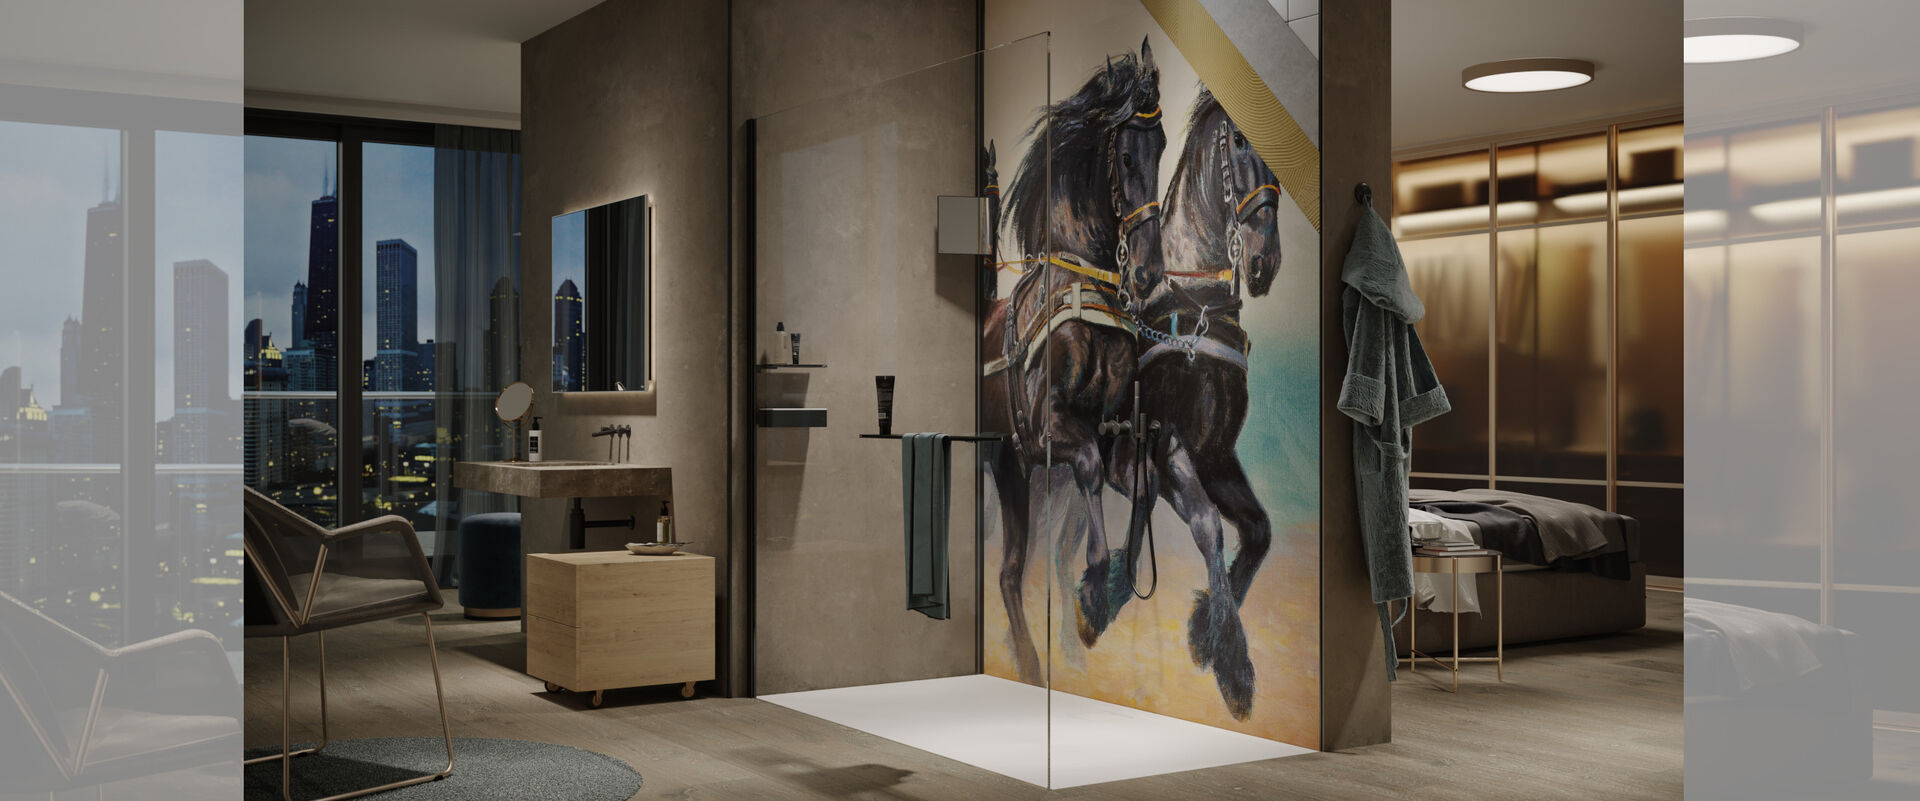 Edeles, großes Badezimmer mit einer weiträumigen Dusche mit schwarzen Elementen und der HÜPPE EasyStyle Wandverkleidung, hier das Motiv aus der Print on Demand Kollektion mit zwei großen, schwarzen Pferden.